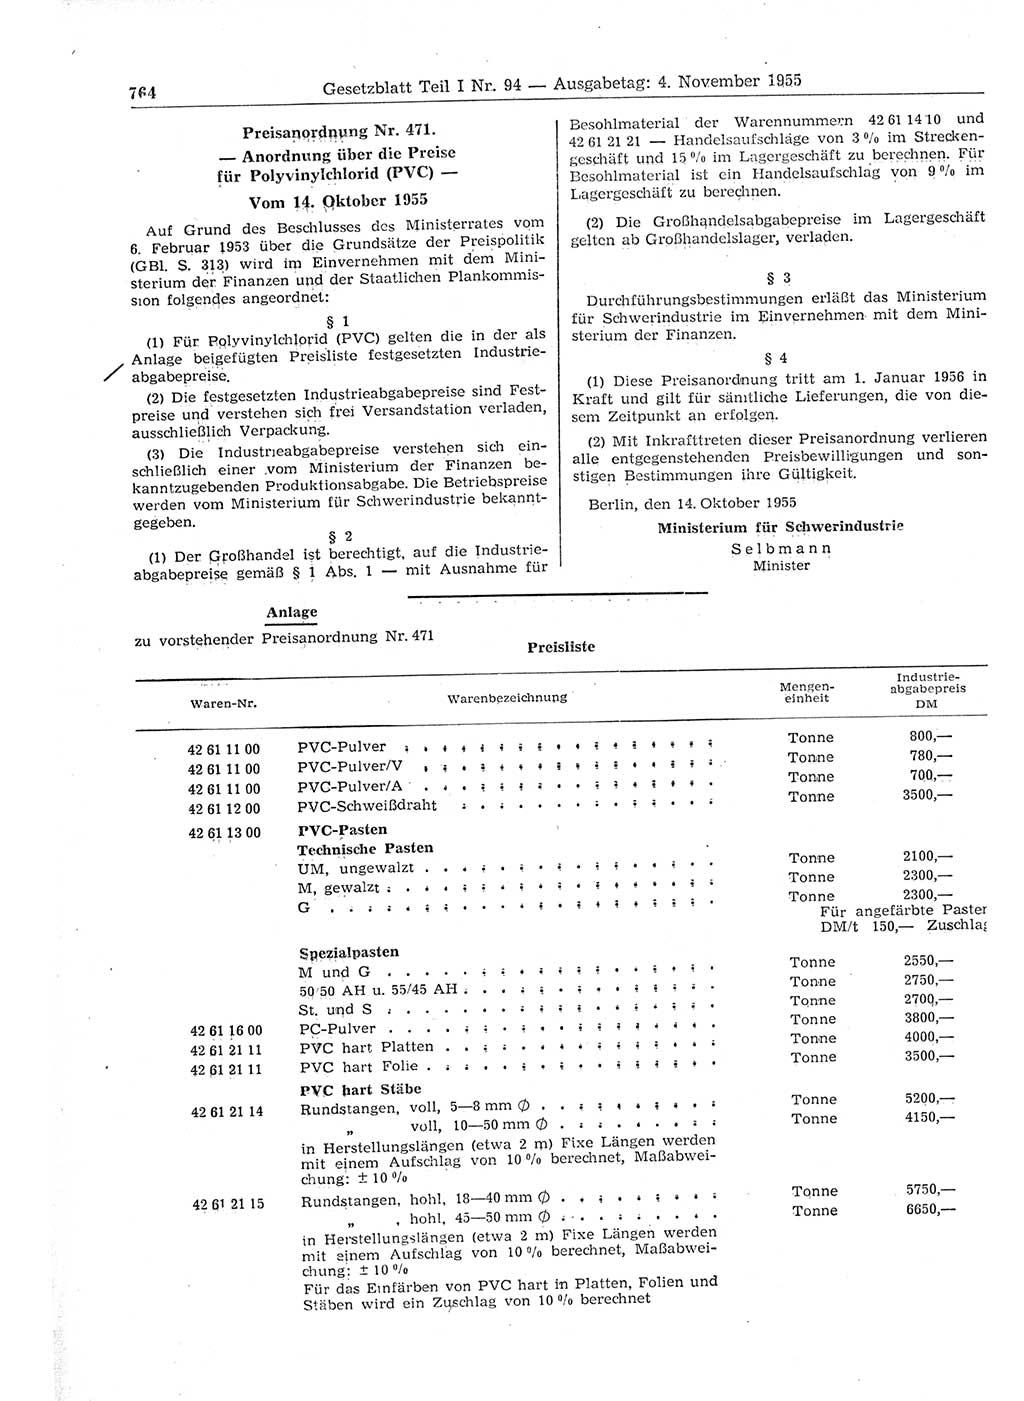 Gesetzblatt (GBl.) der Deutschen Demokratischen Republik (DDR) Teil Ⅰ 1955, Seite 764 (GBl. DDR Ⅰ 1955, S. 764)